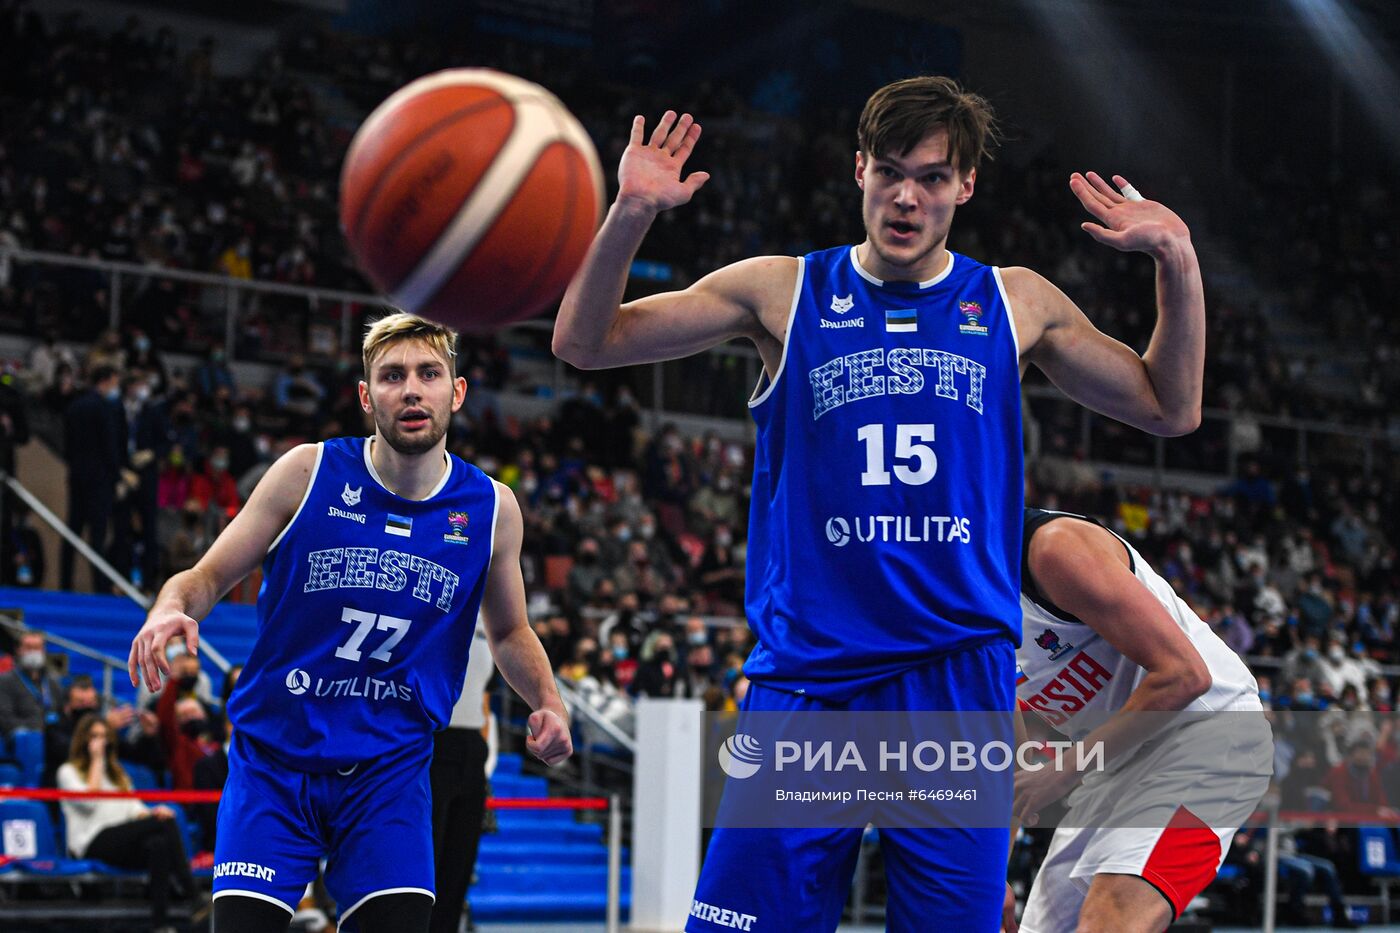 Баскетбол. Мужчины. Квалификация Евробаскета-2022. Матч Россия - Эстония